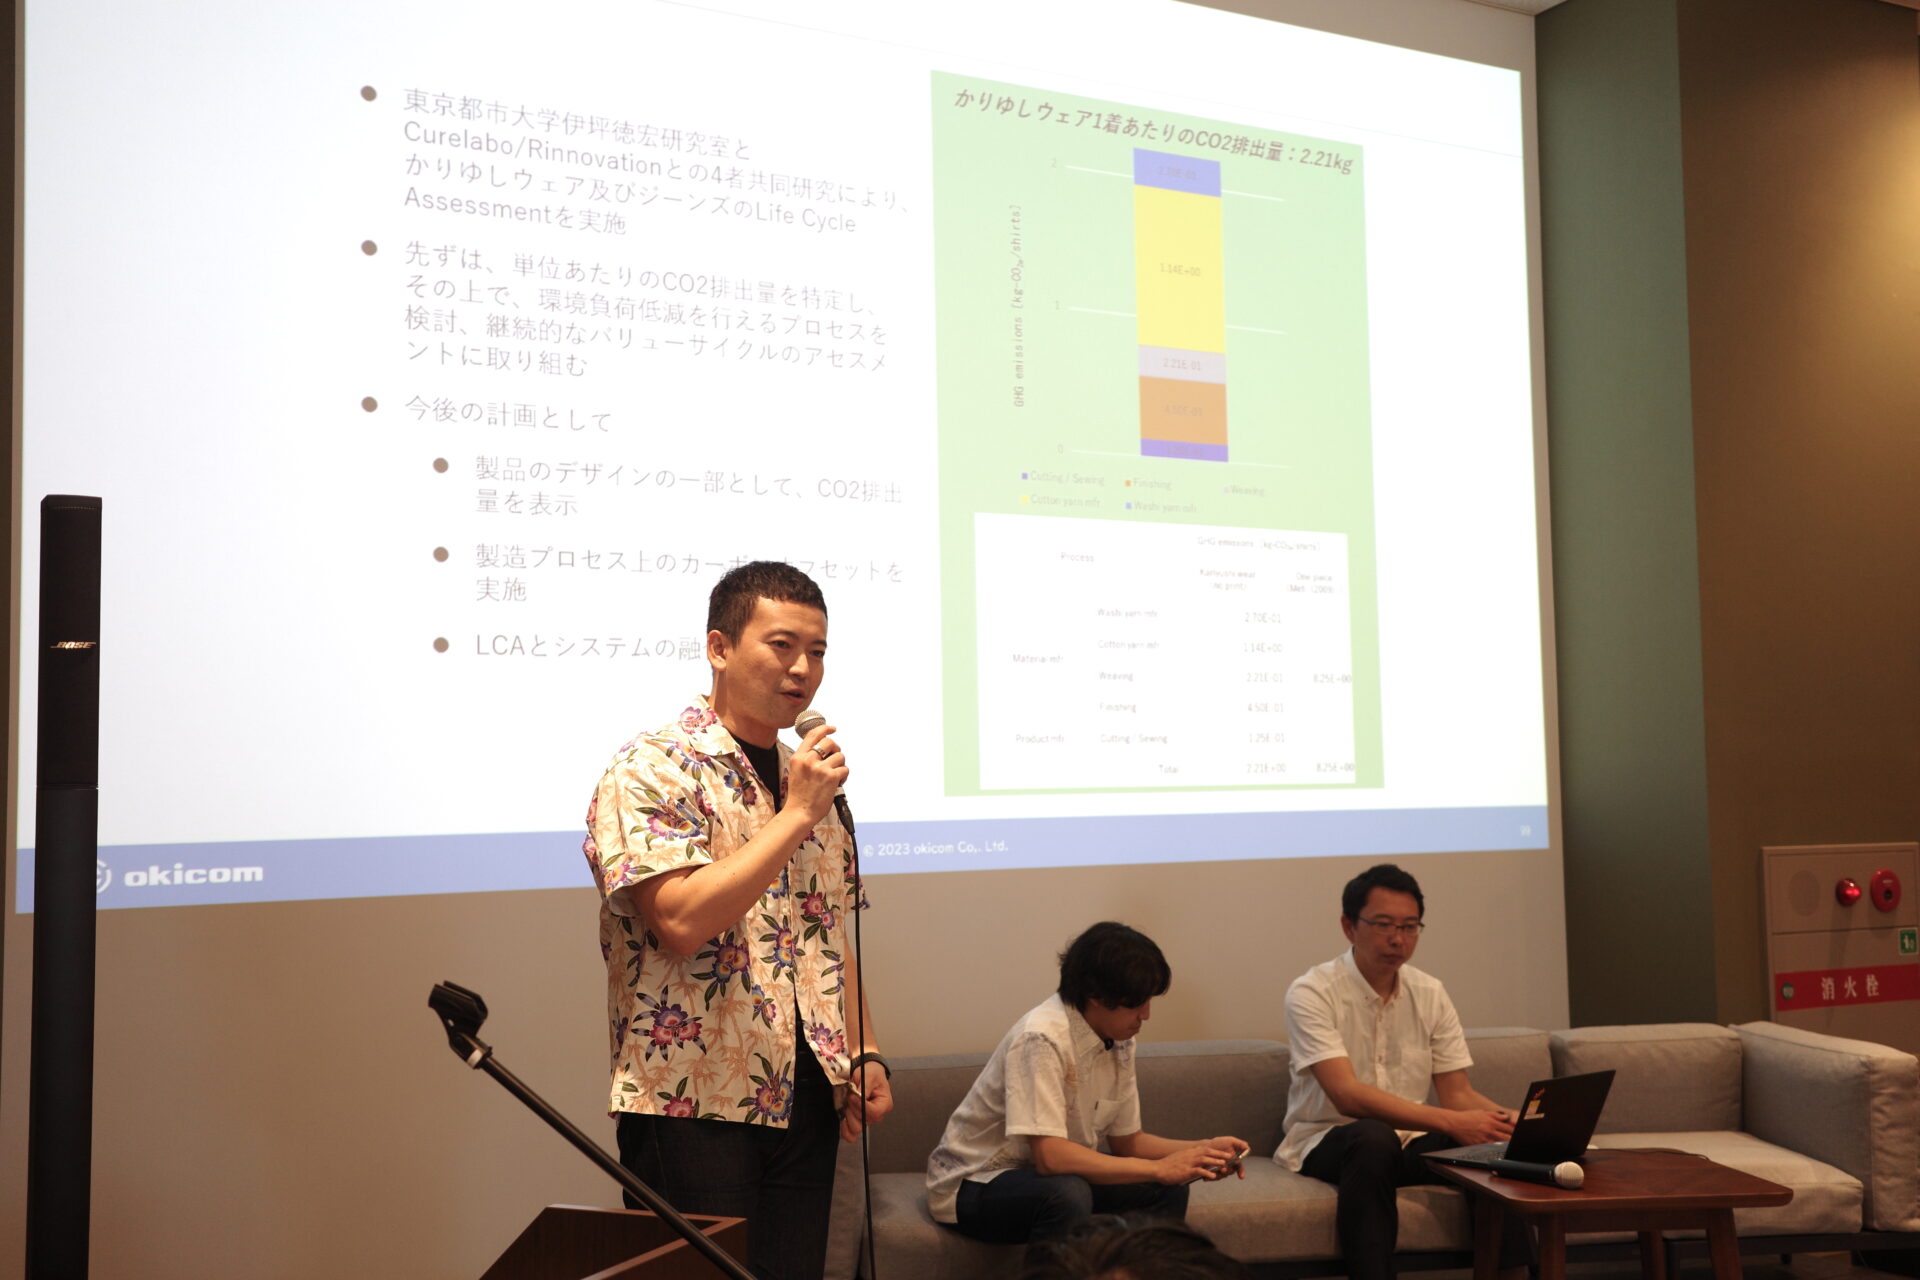 沖縄脱炭素経営シンポジウムに、弊社代表の小渡晋治が登壇いたしました。